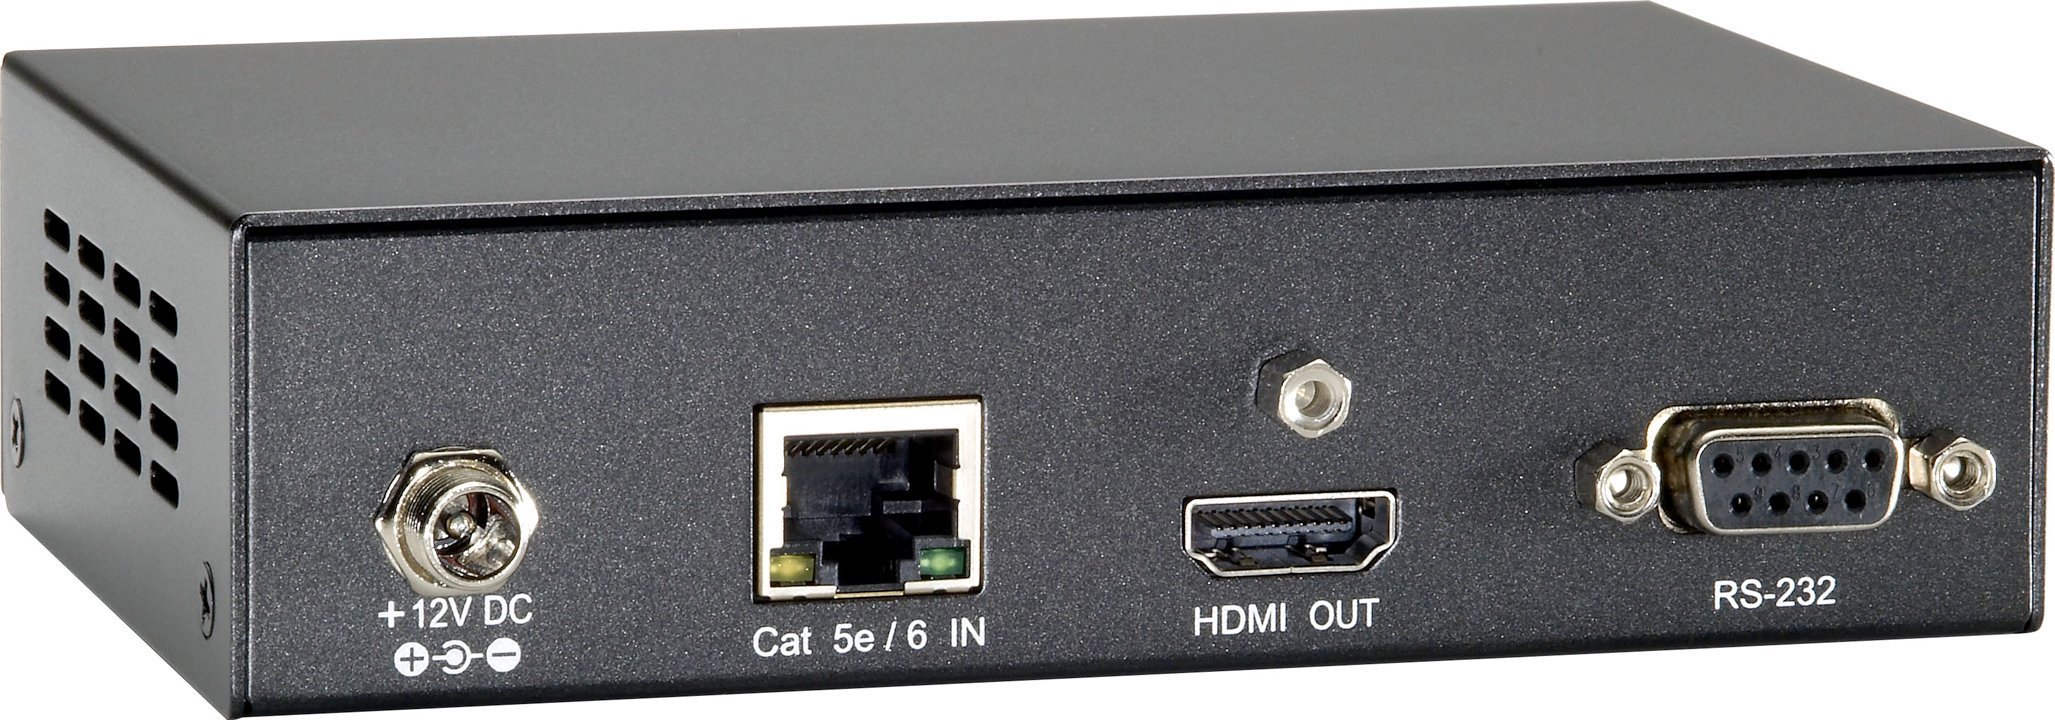 Sistem de transfer de semnal AV LevelOne Audio Video Extender LevelOne HVE-9211R HDMIover